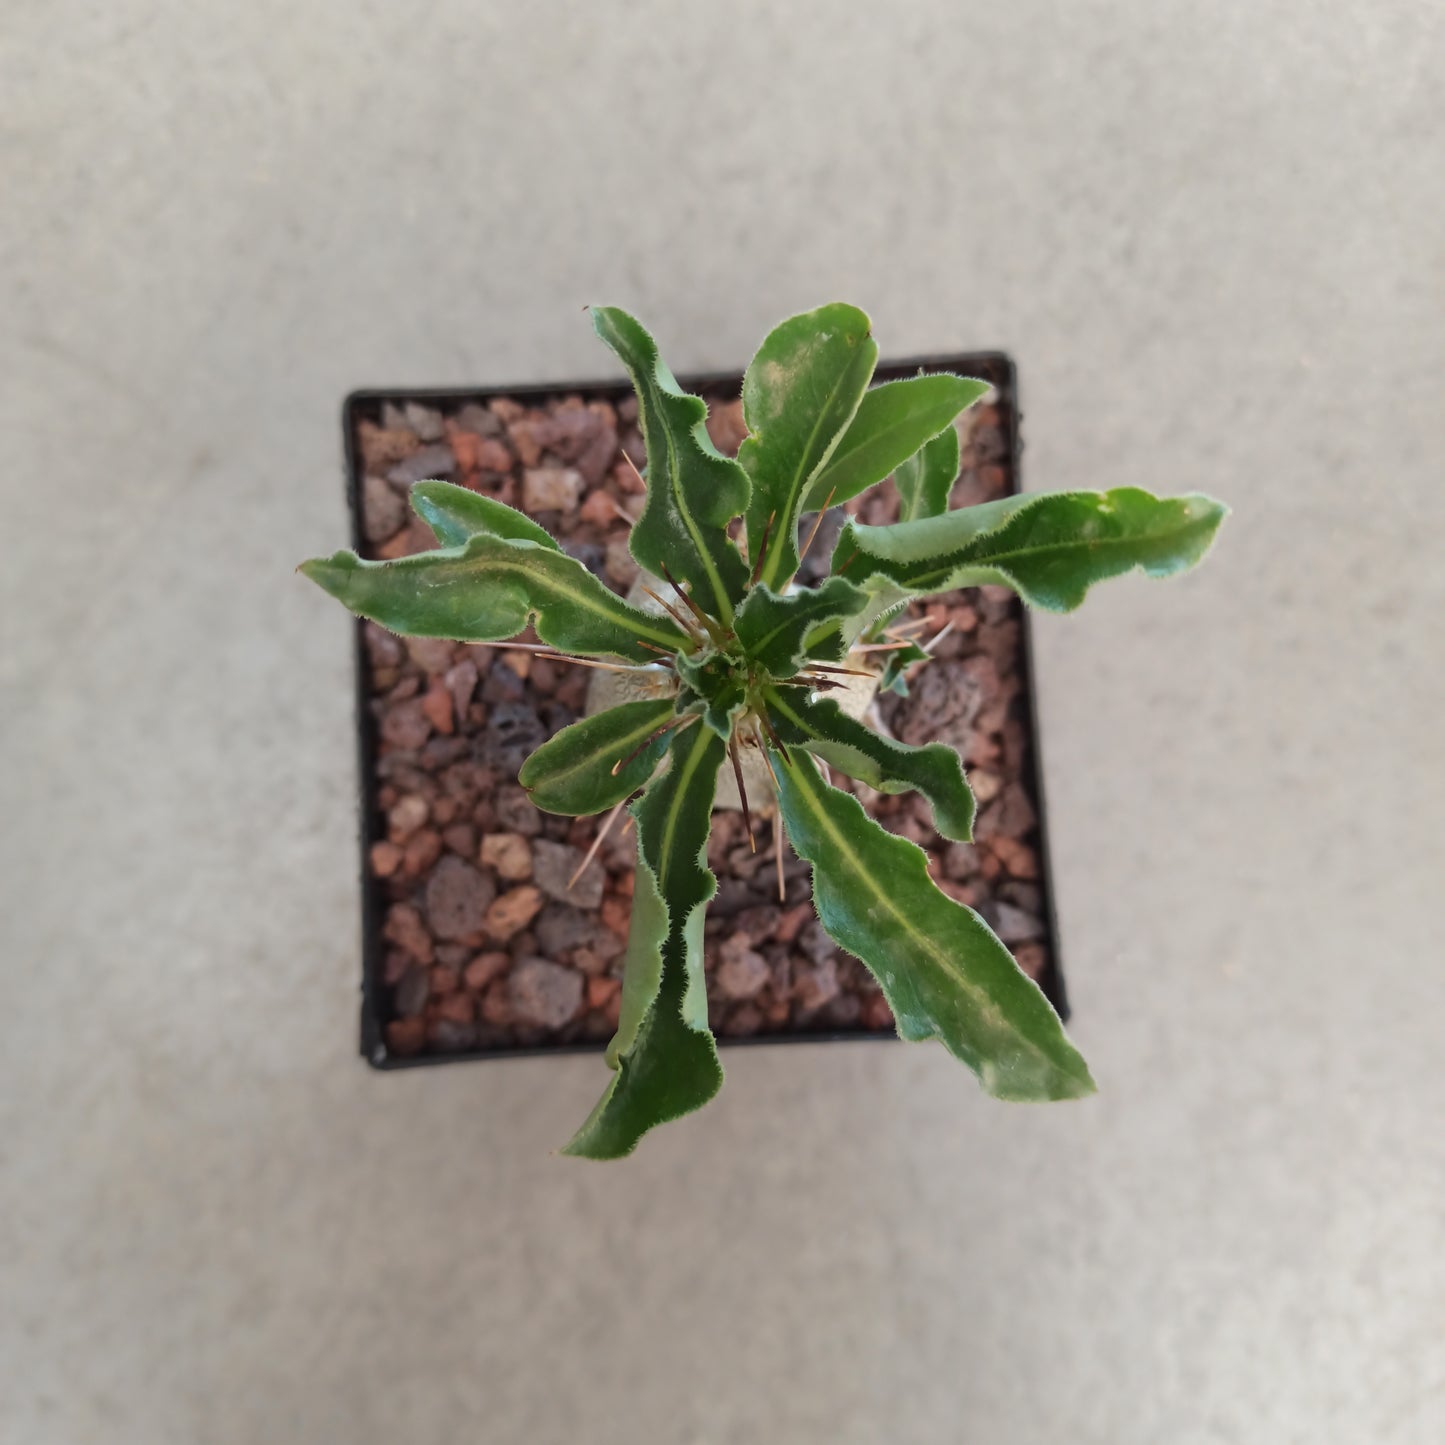 Pachypodium lealli subsp. saundersii